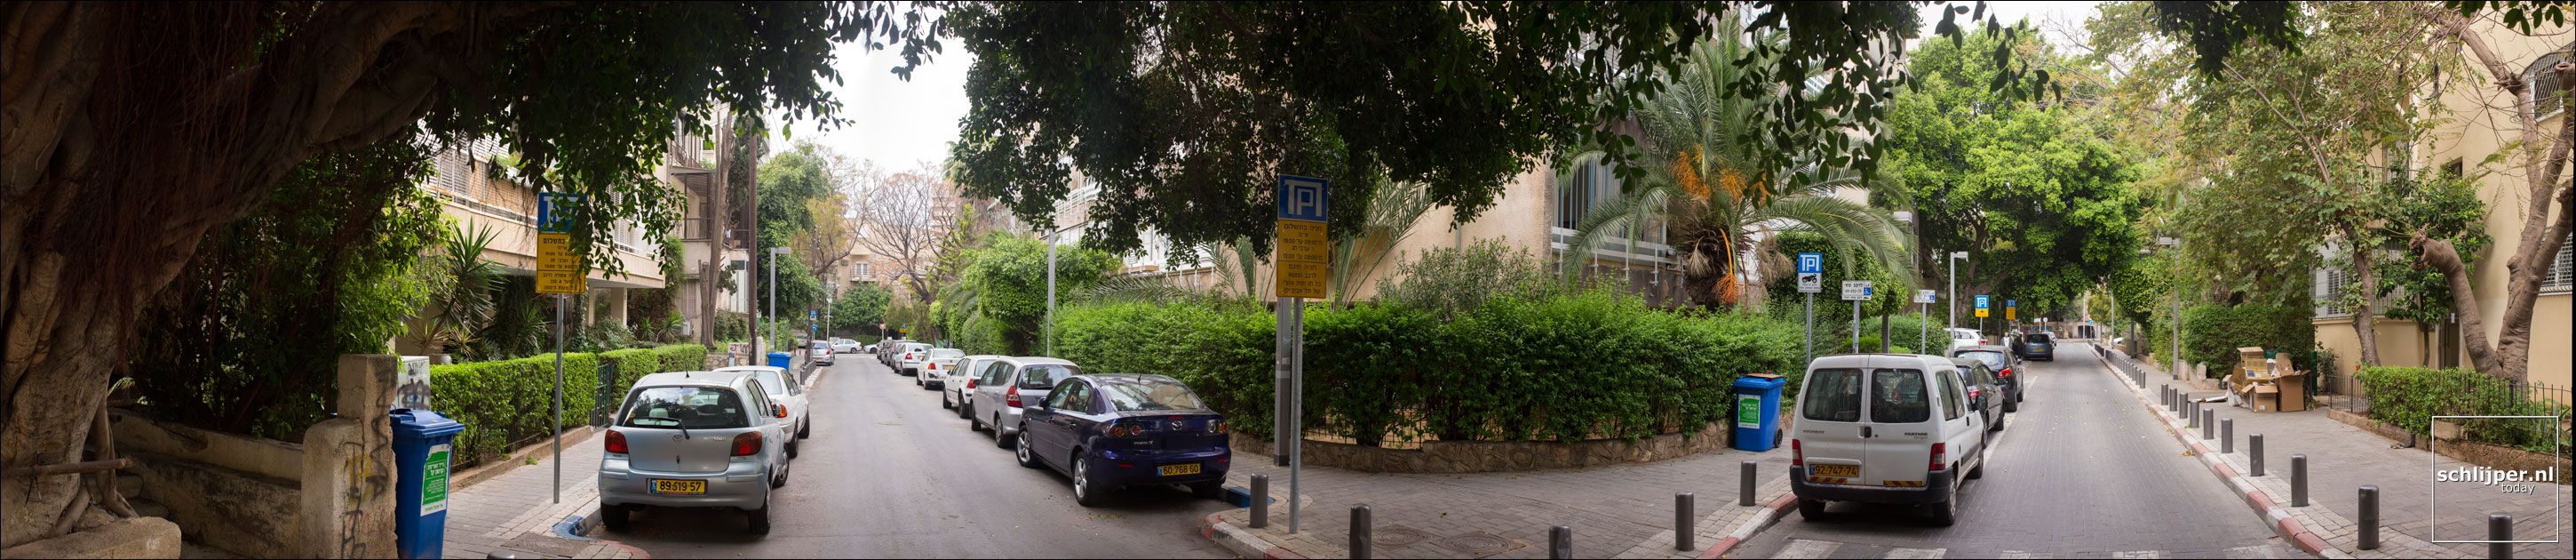 Israel, Tel Aviv, 4 maart 2013